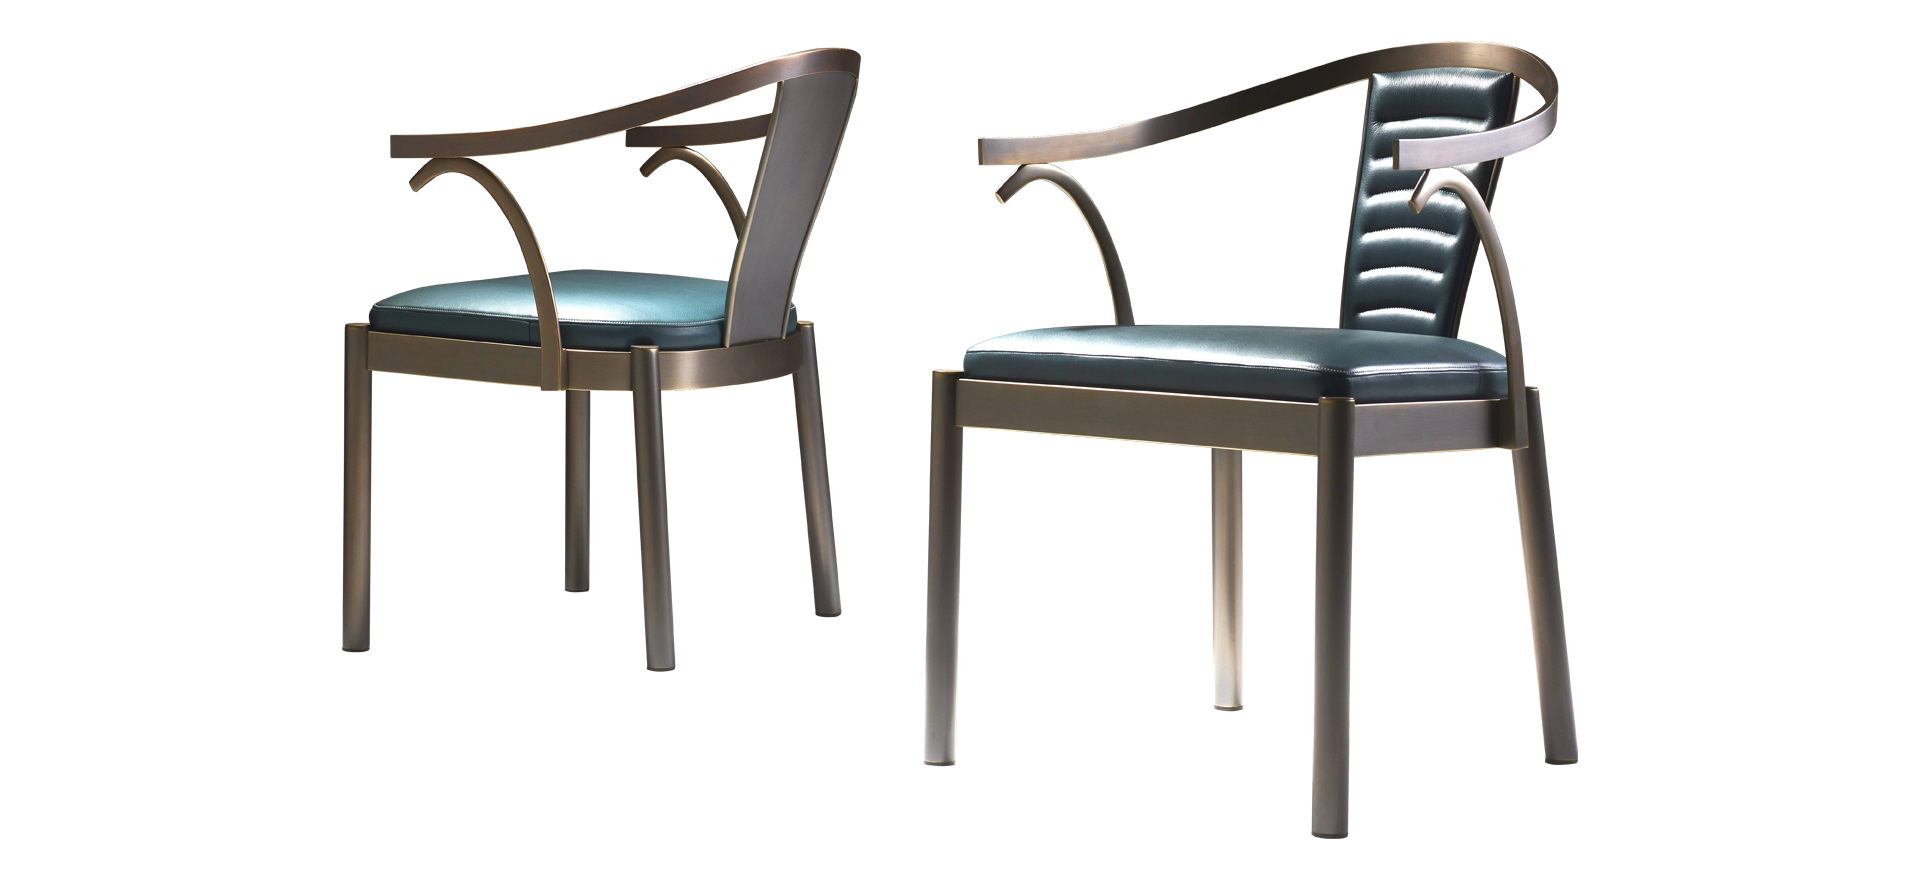 Jasmine — обитый кожей бронзовый обеденный стул с подлокотниками из каталога Promemoria | Promemoria